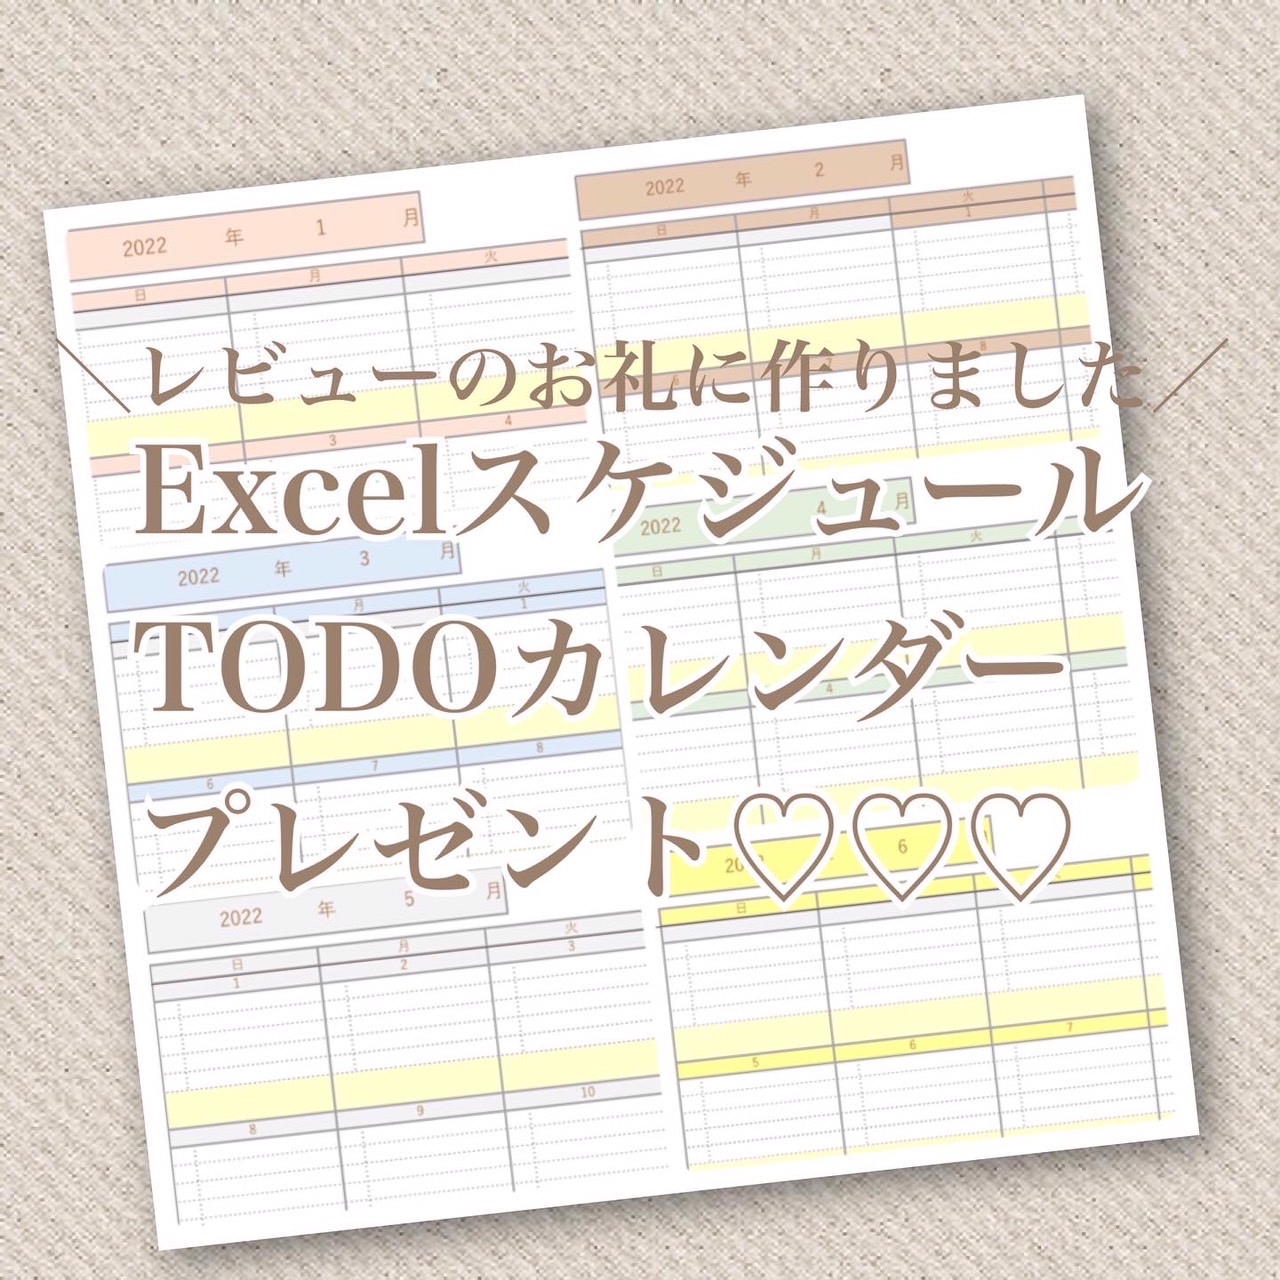 Excel家計簿・Excel献立表レビュー下さった方へスケジュールToDoカレンダープレゼントします